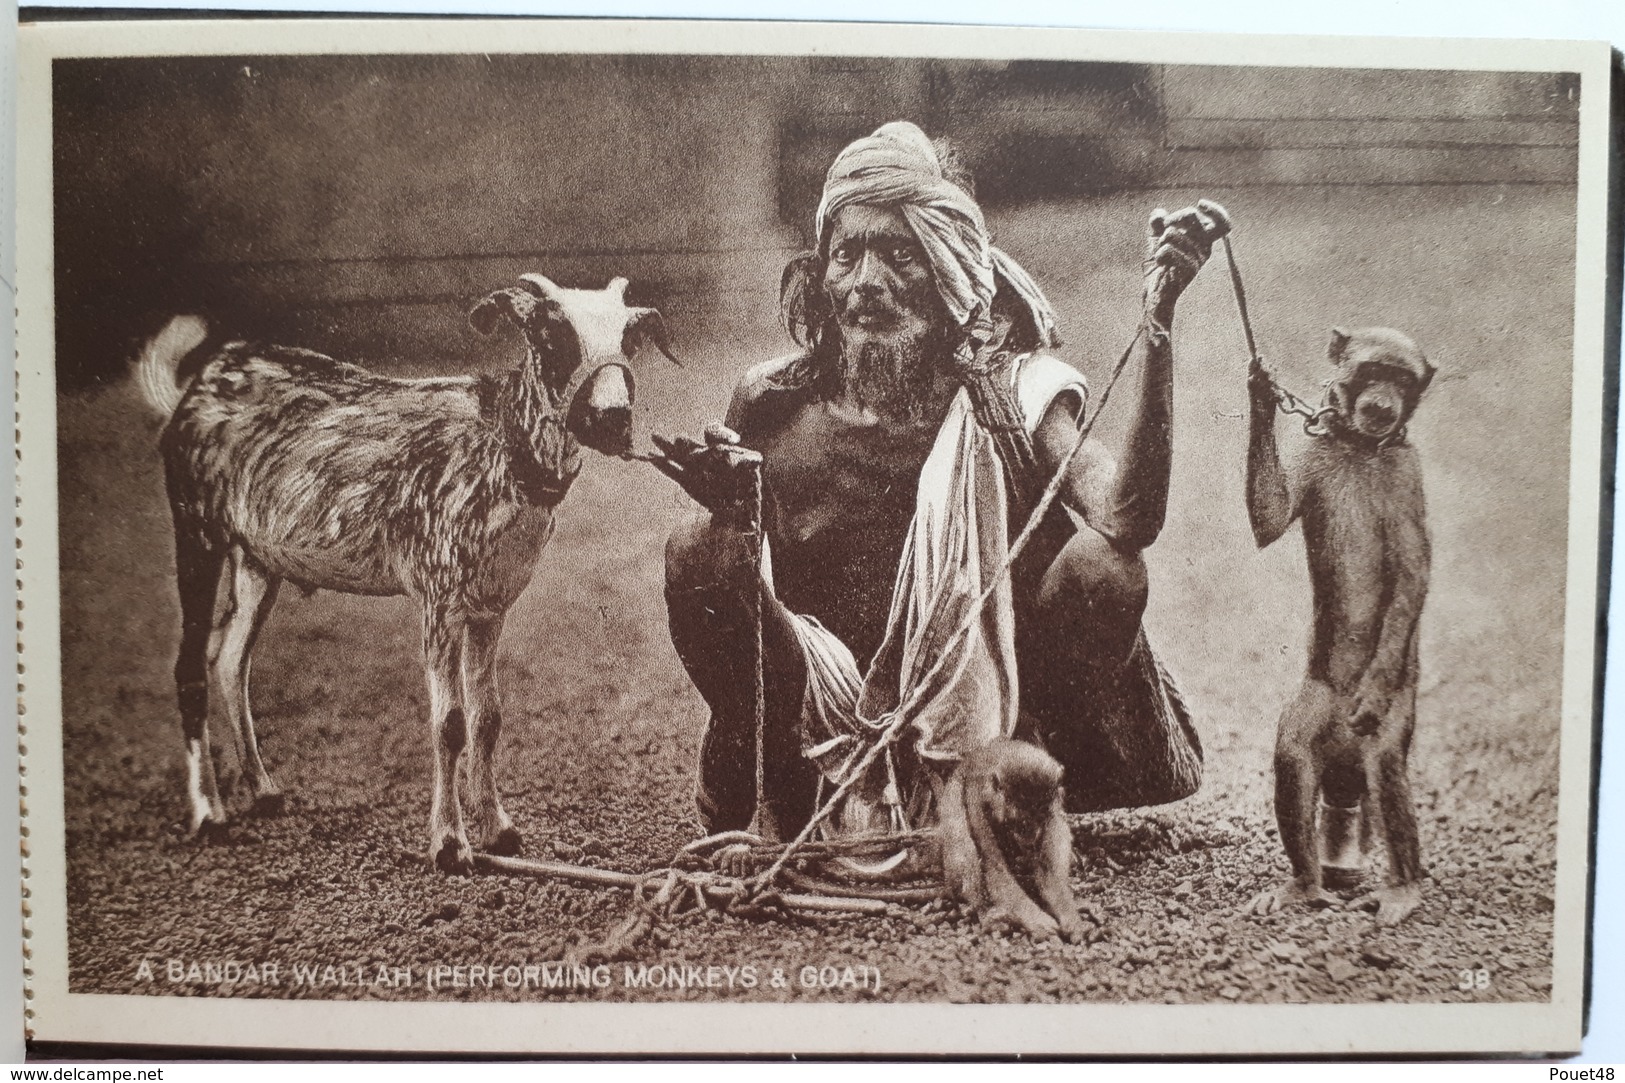 INDE - CALCUTTA - Rare carnet de 8 cartes: Montreur d'ours: dresseur de serpents et de singes:  Barbier